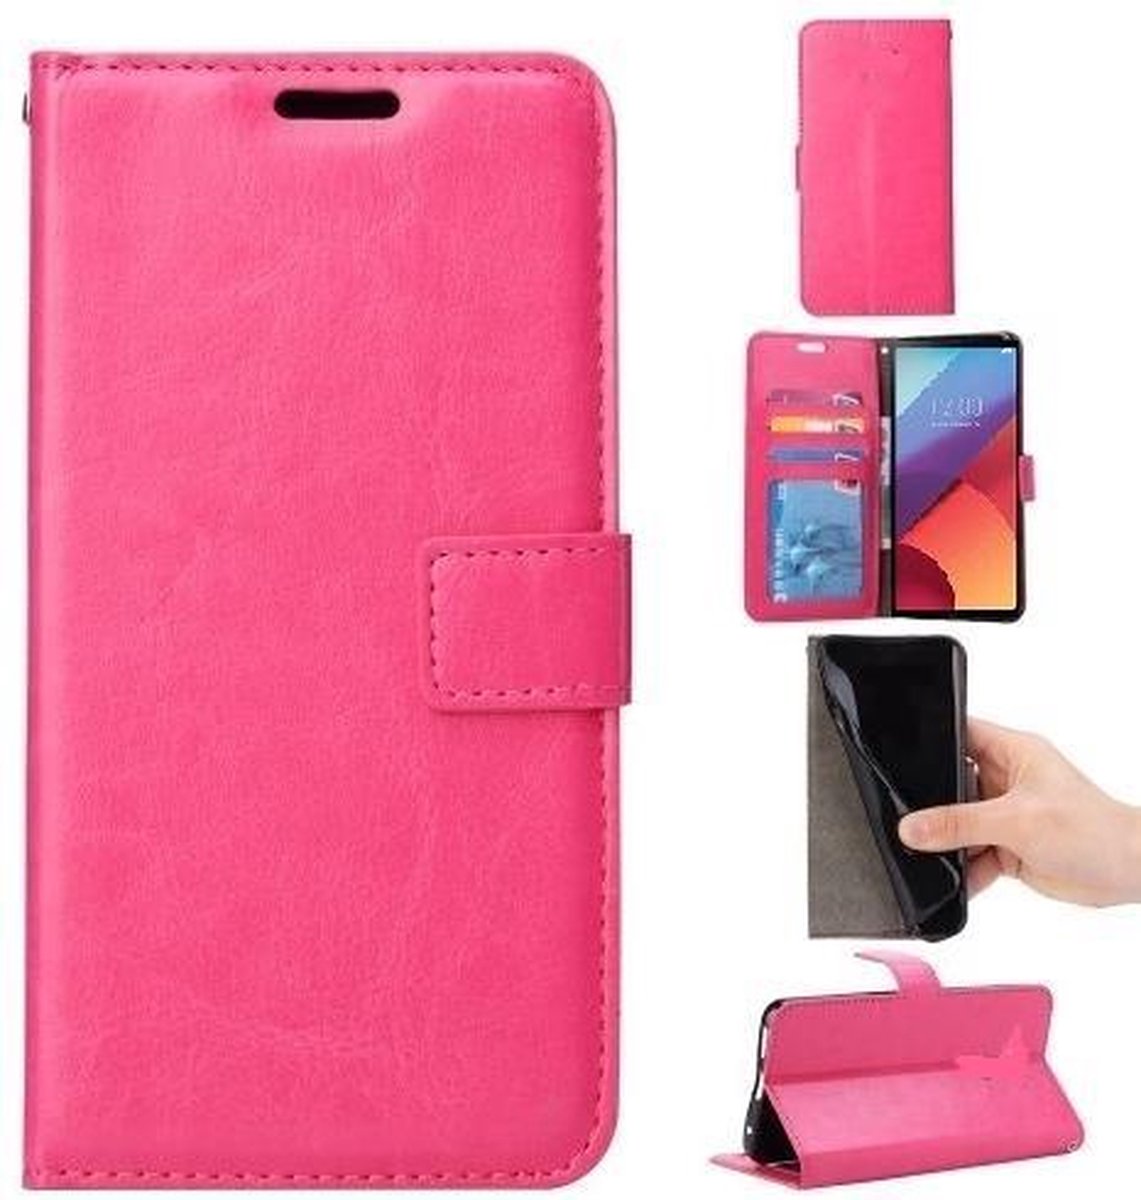 Telefoonhoesje Geschikt voor: Motorola Moto G5 S Plus portemonnee hoesje - roze